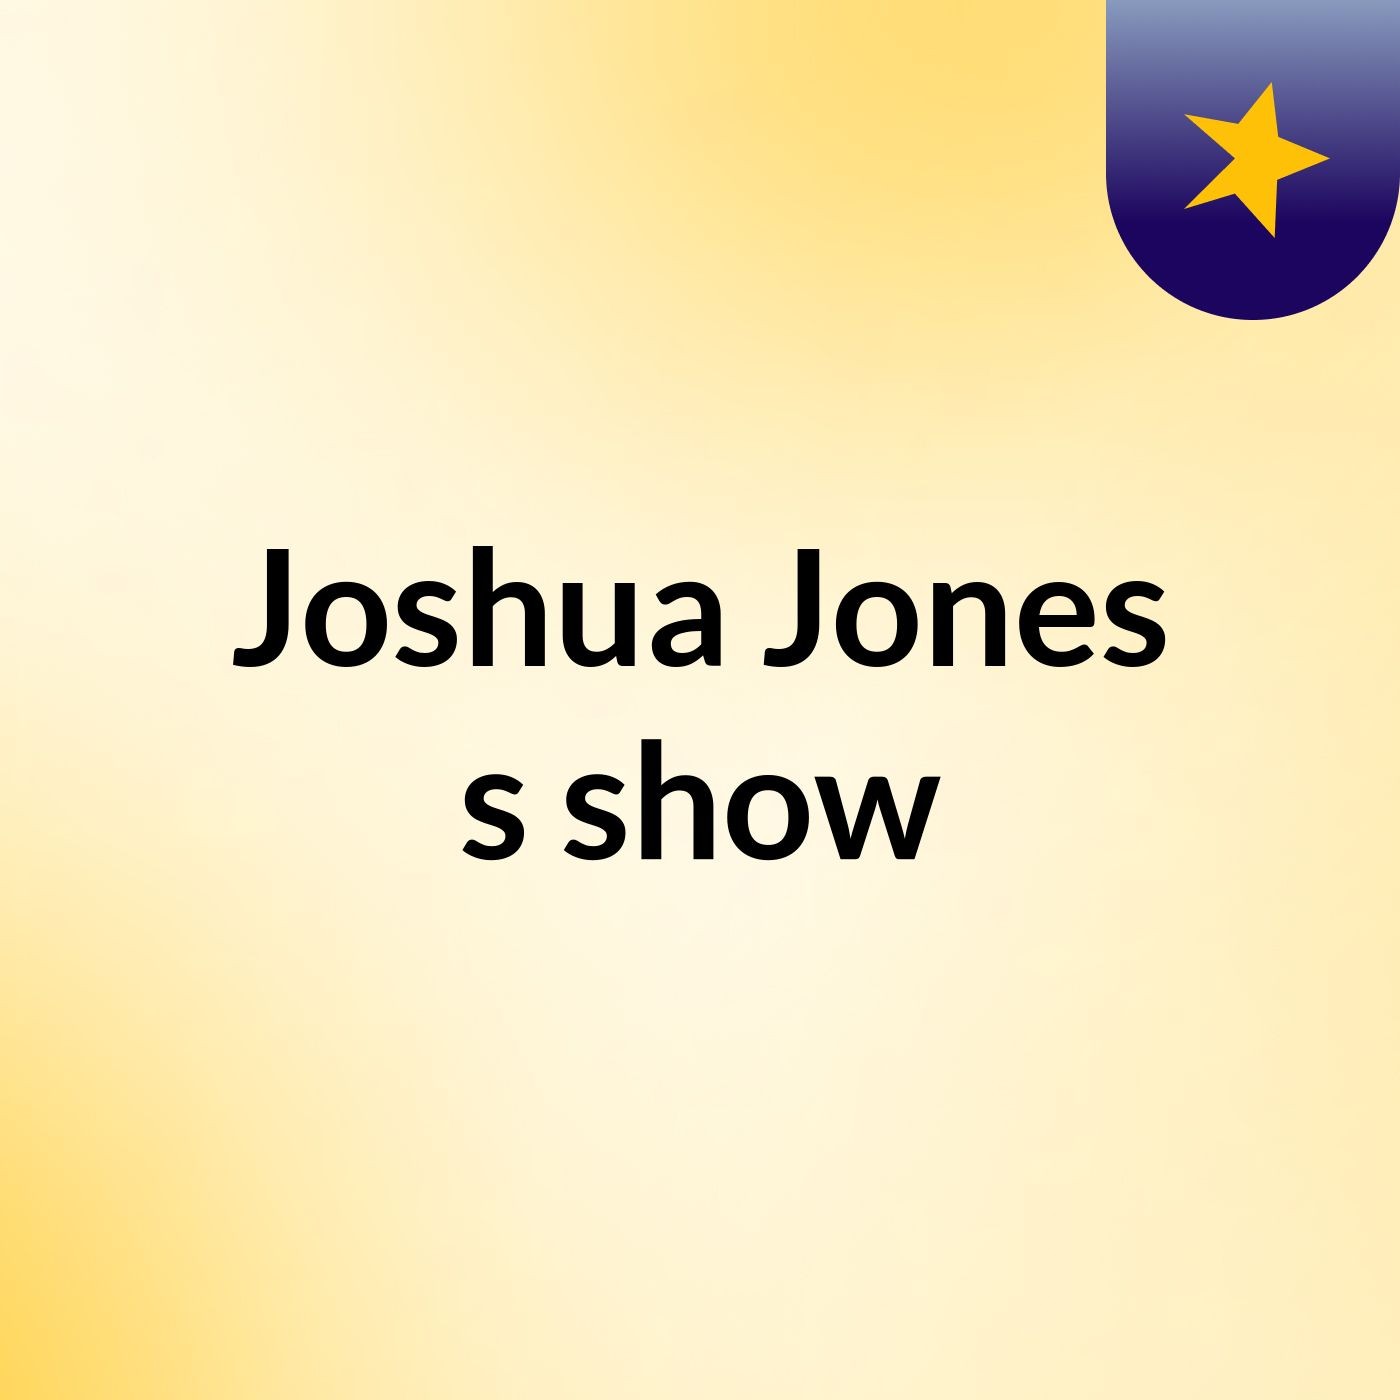 Episode 7 - Joshua Jones's show